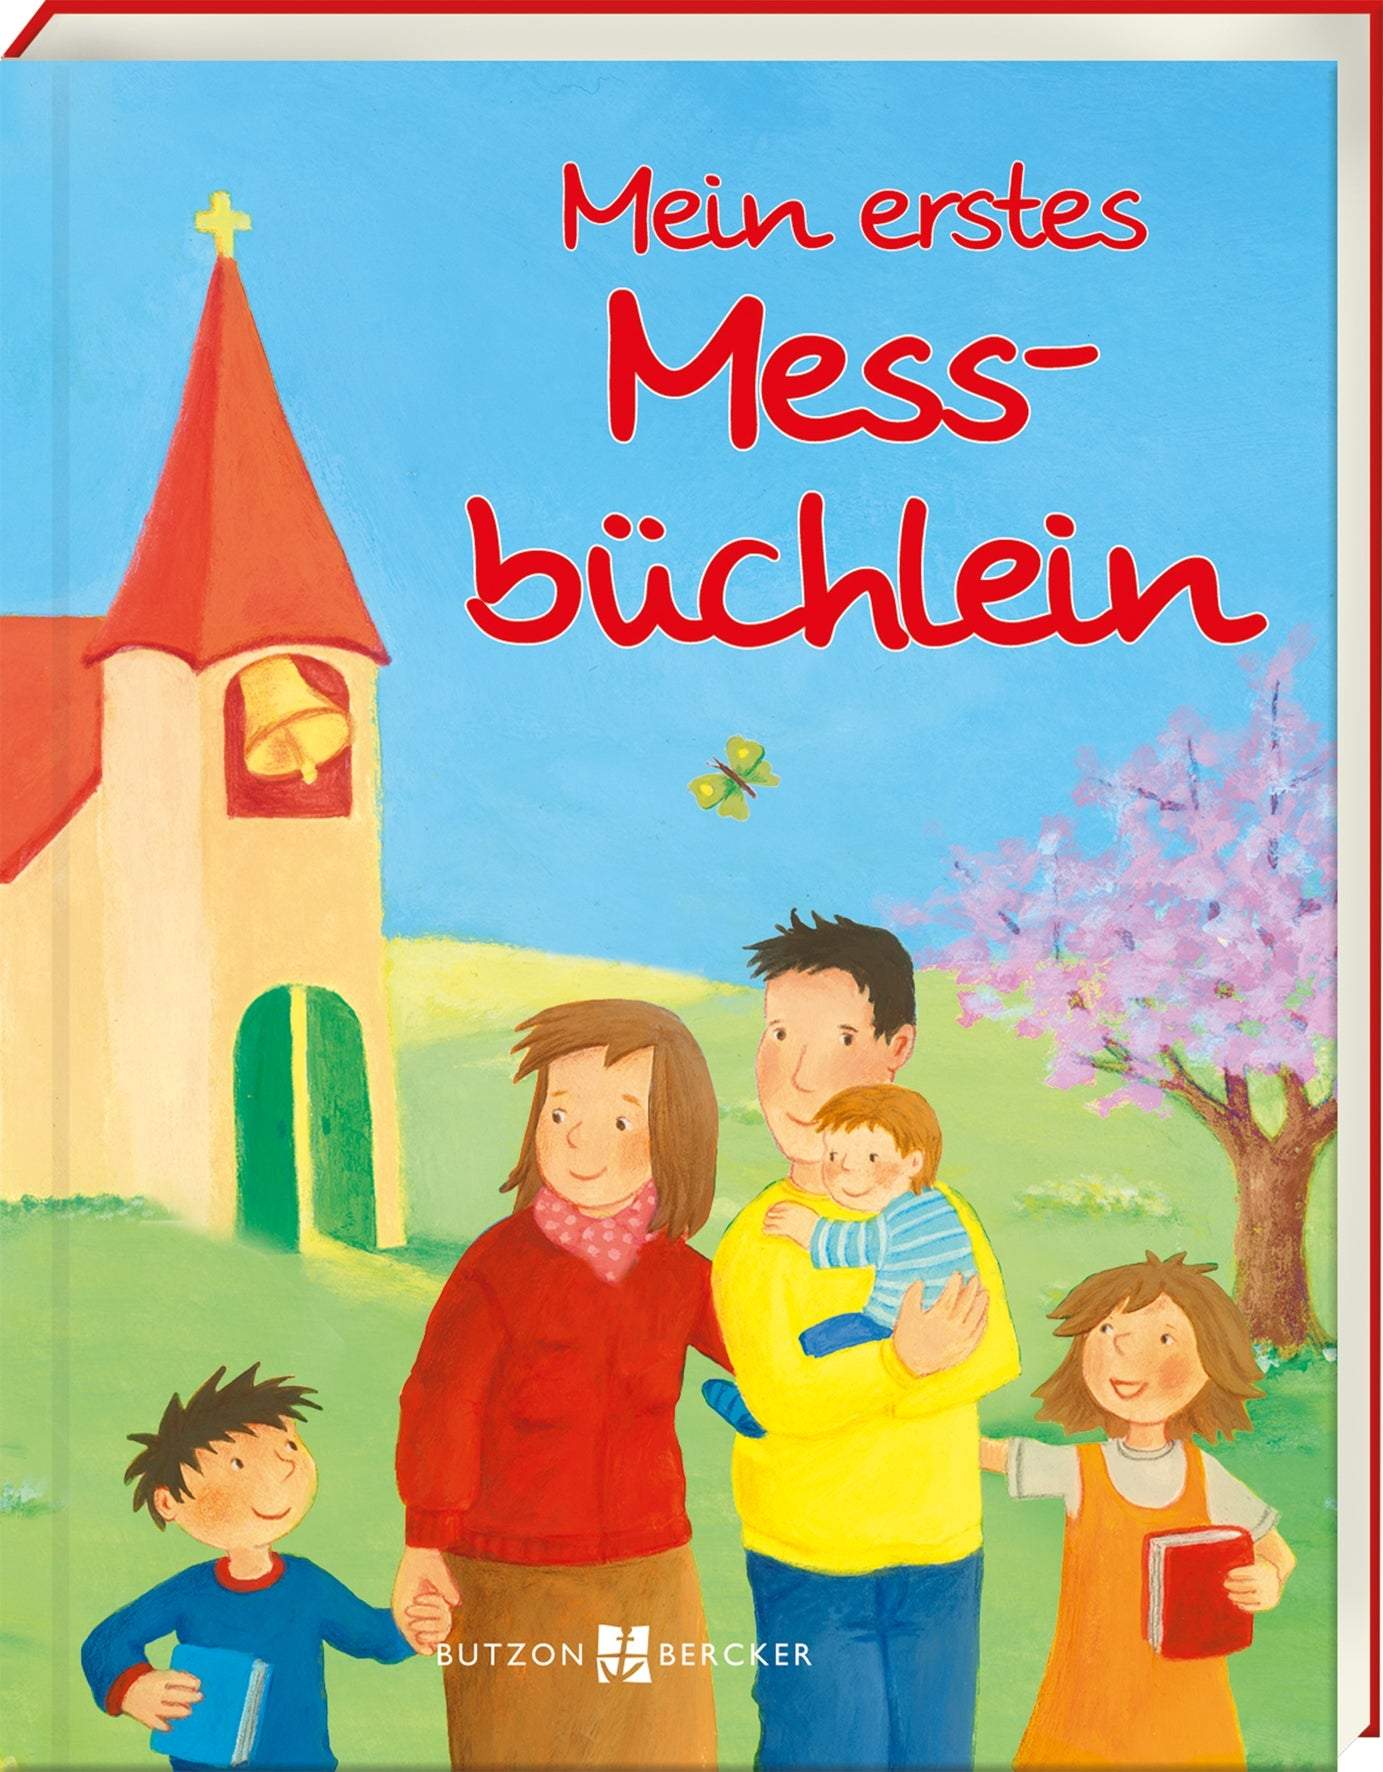 Mein erstes Messbüchlein-Butzon & Bercker-Kinderbücher,Kindergebete & Psalmen